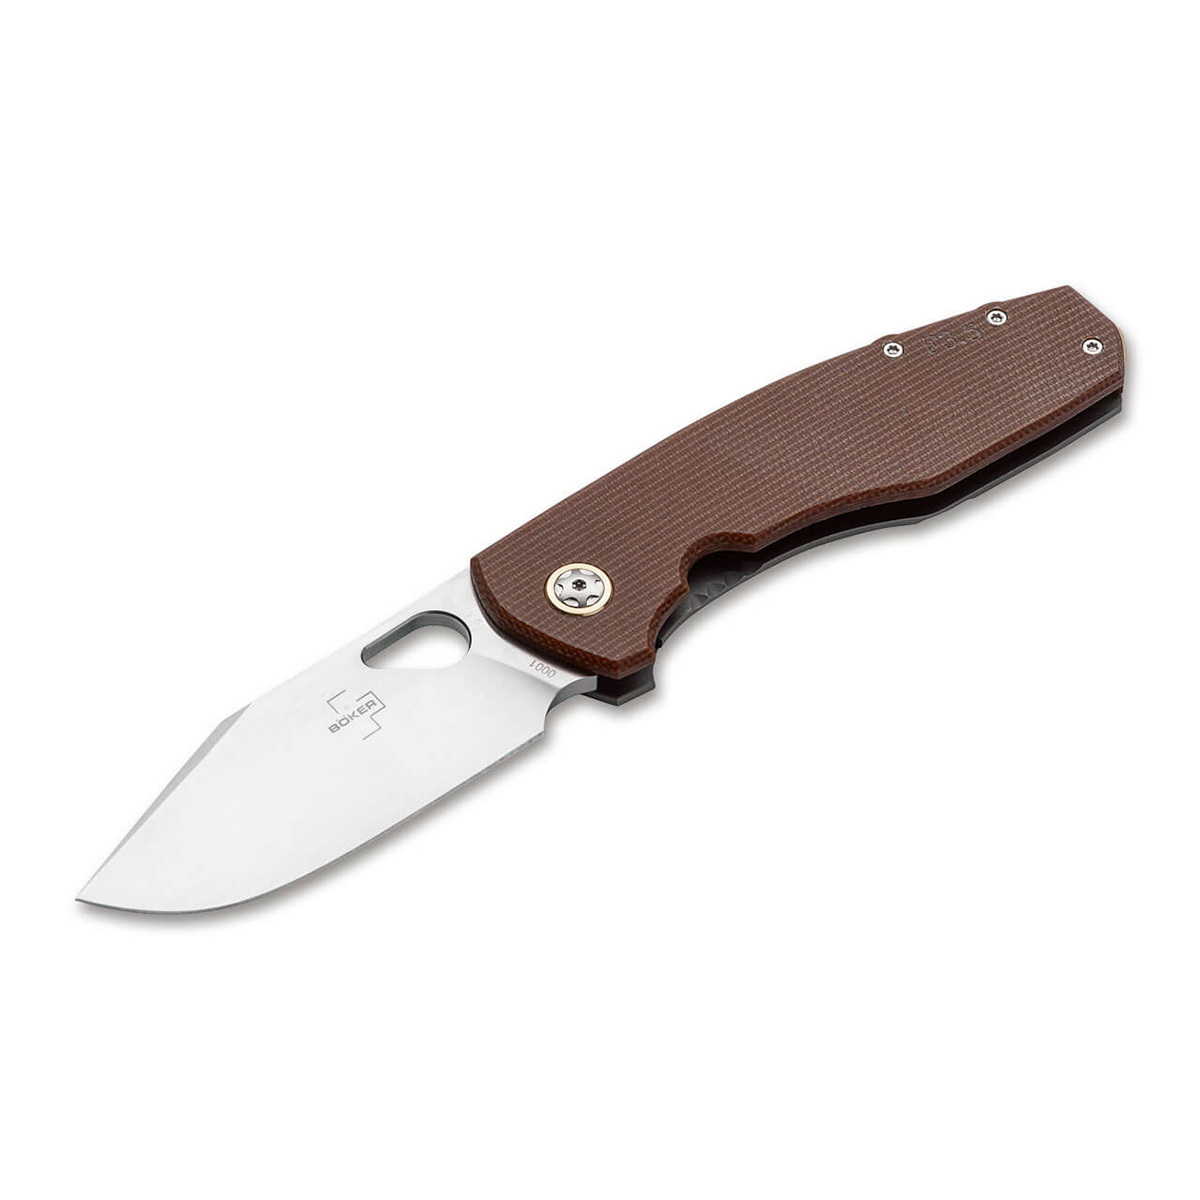 Нож складной Boker Vox F3.5 Micarta, сталь D2, рукоять микарта складной нож boker barlow burlap micarta brown сталь n690 рукоять микарта